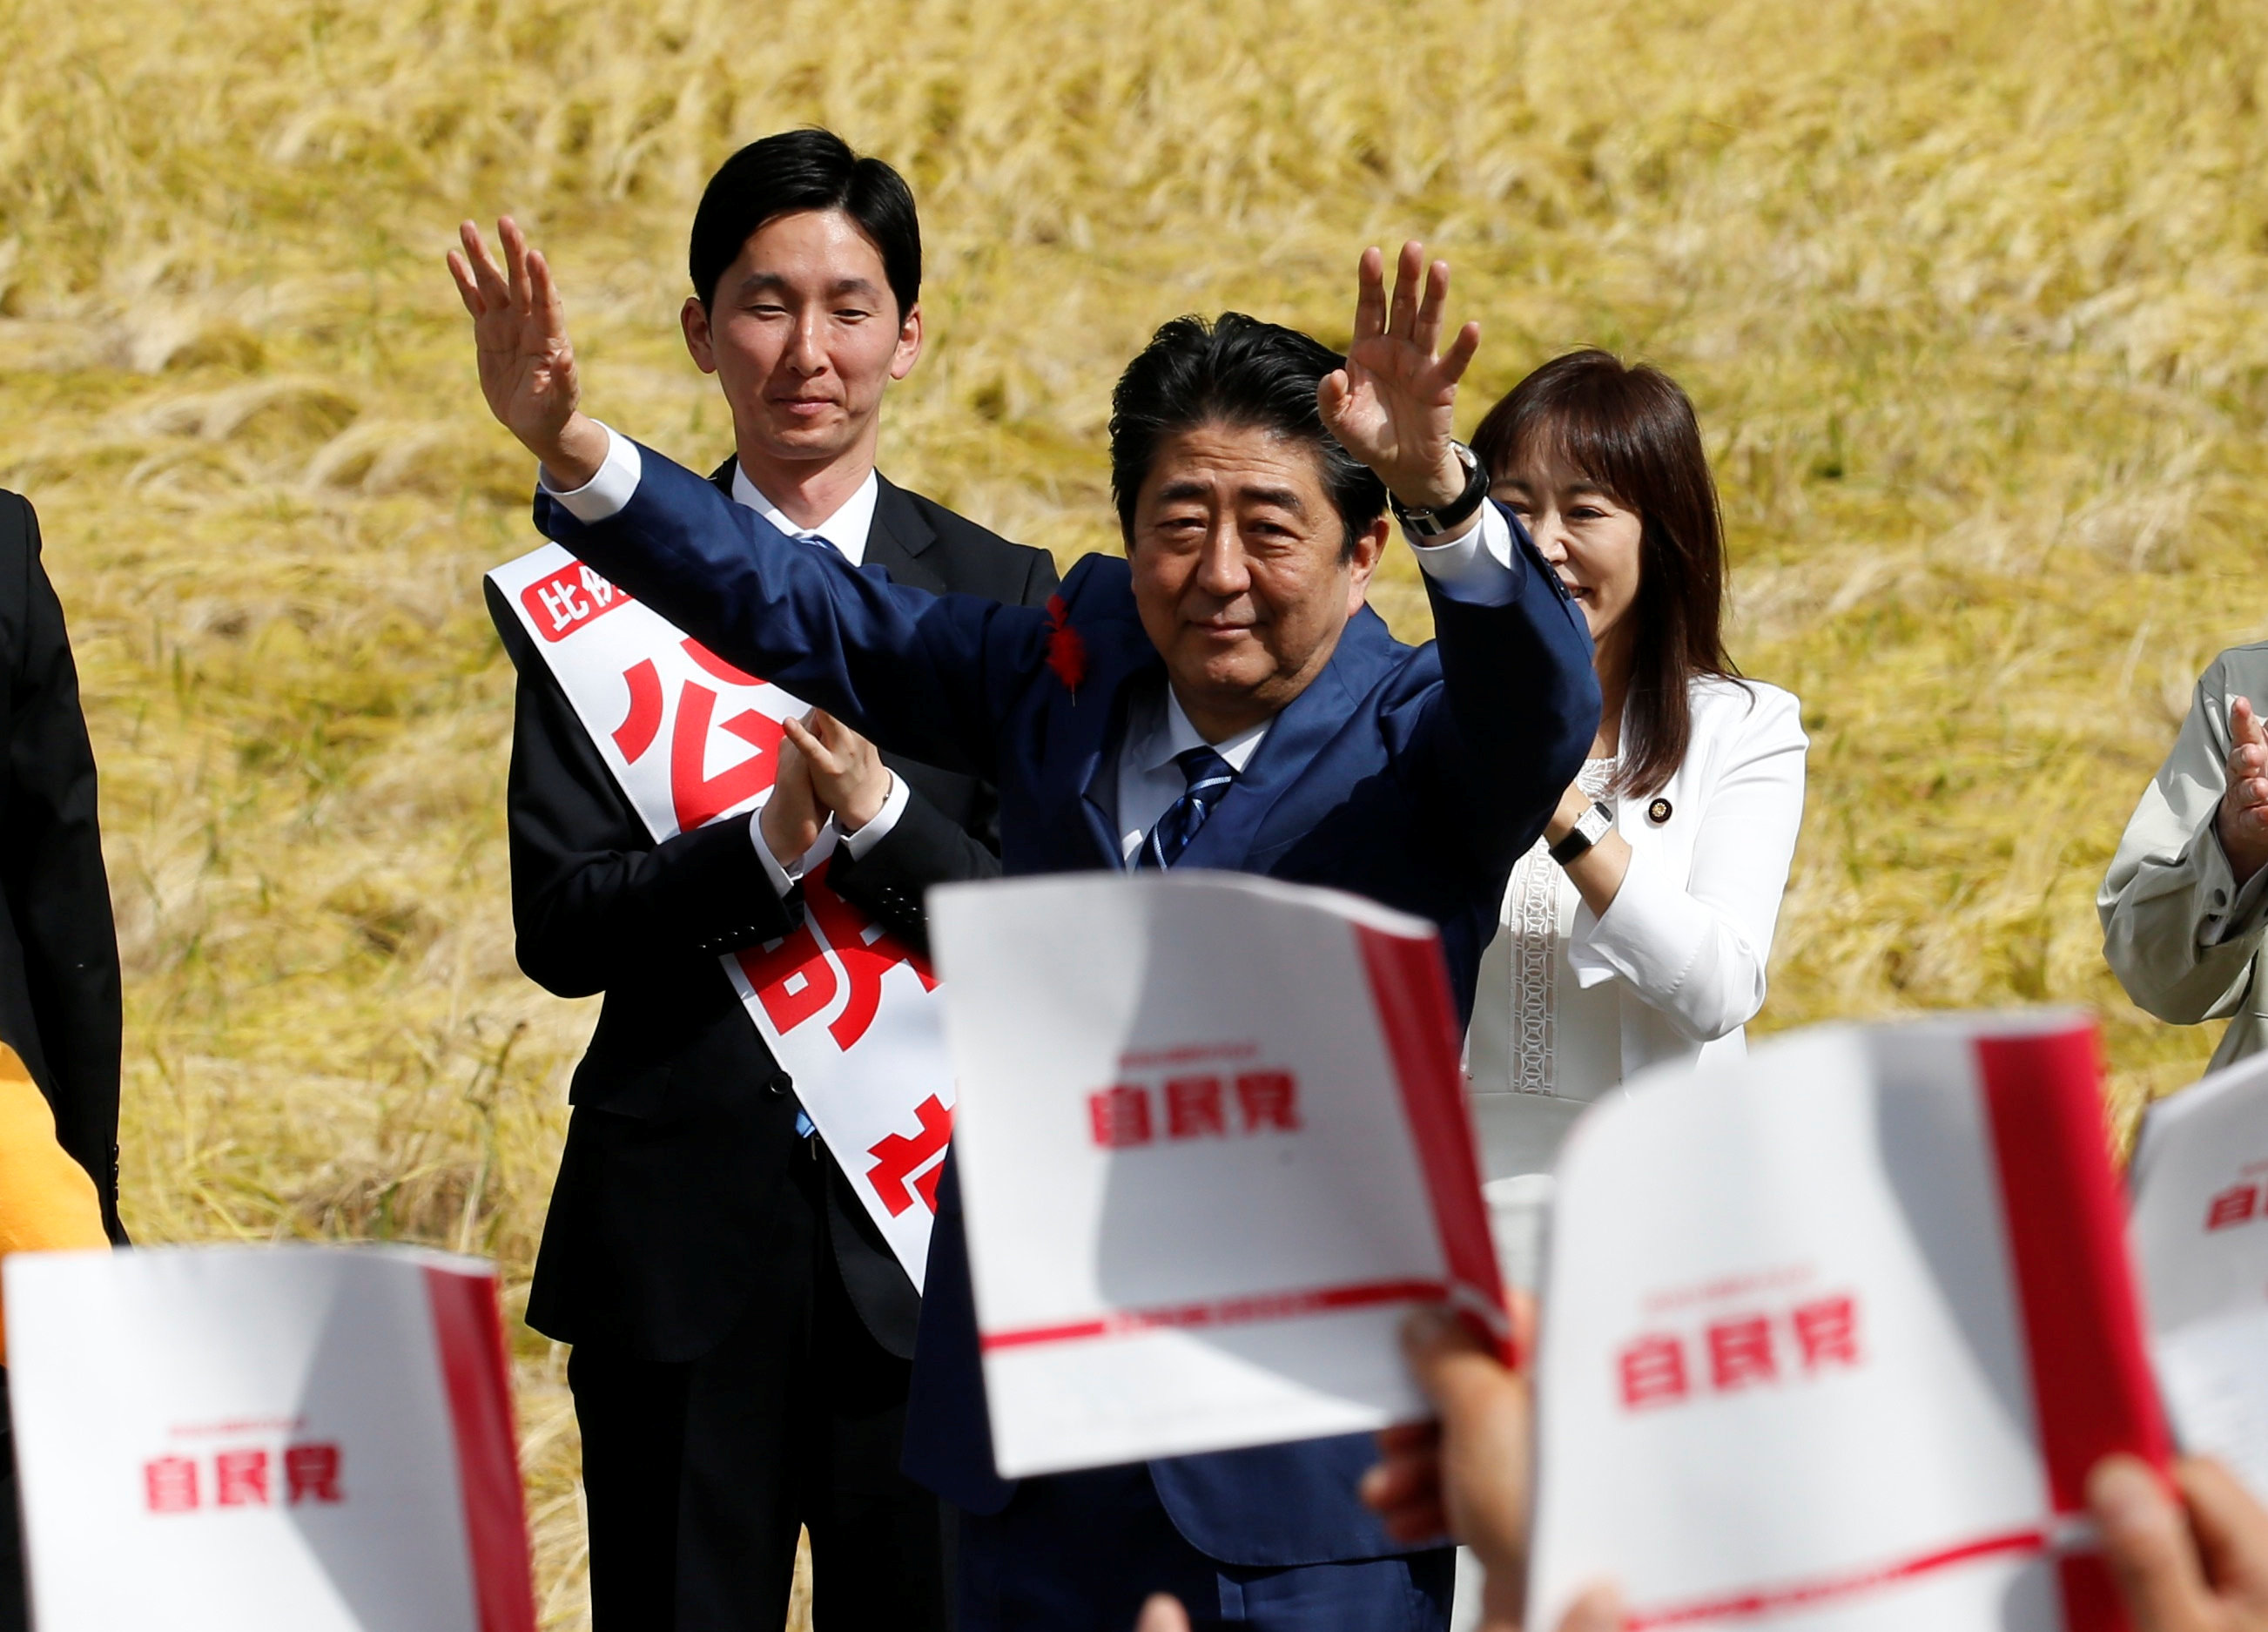 رئيس وزراء اليابان يحيى أنصاره